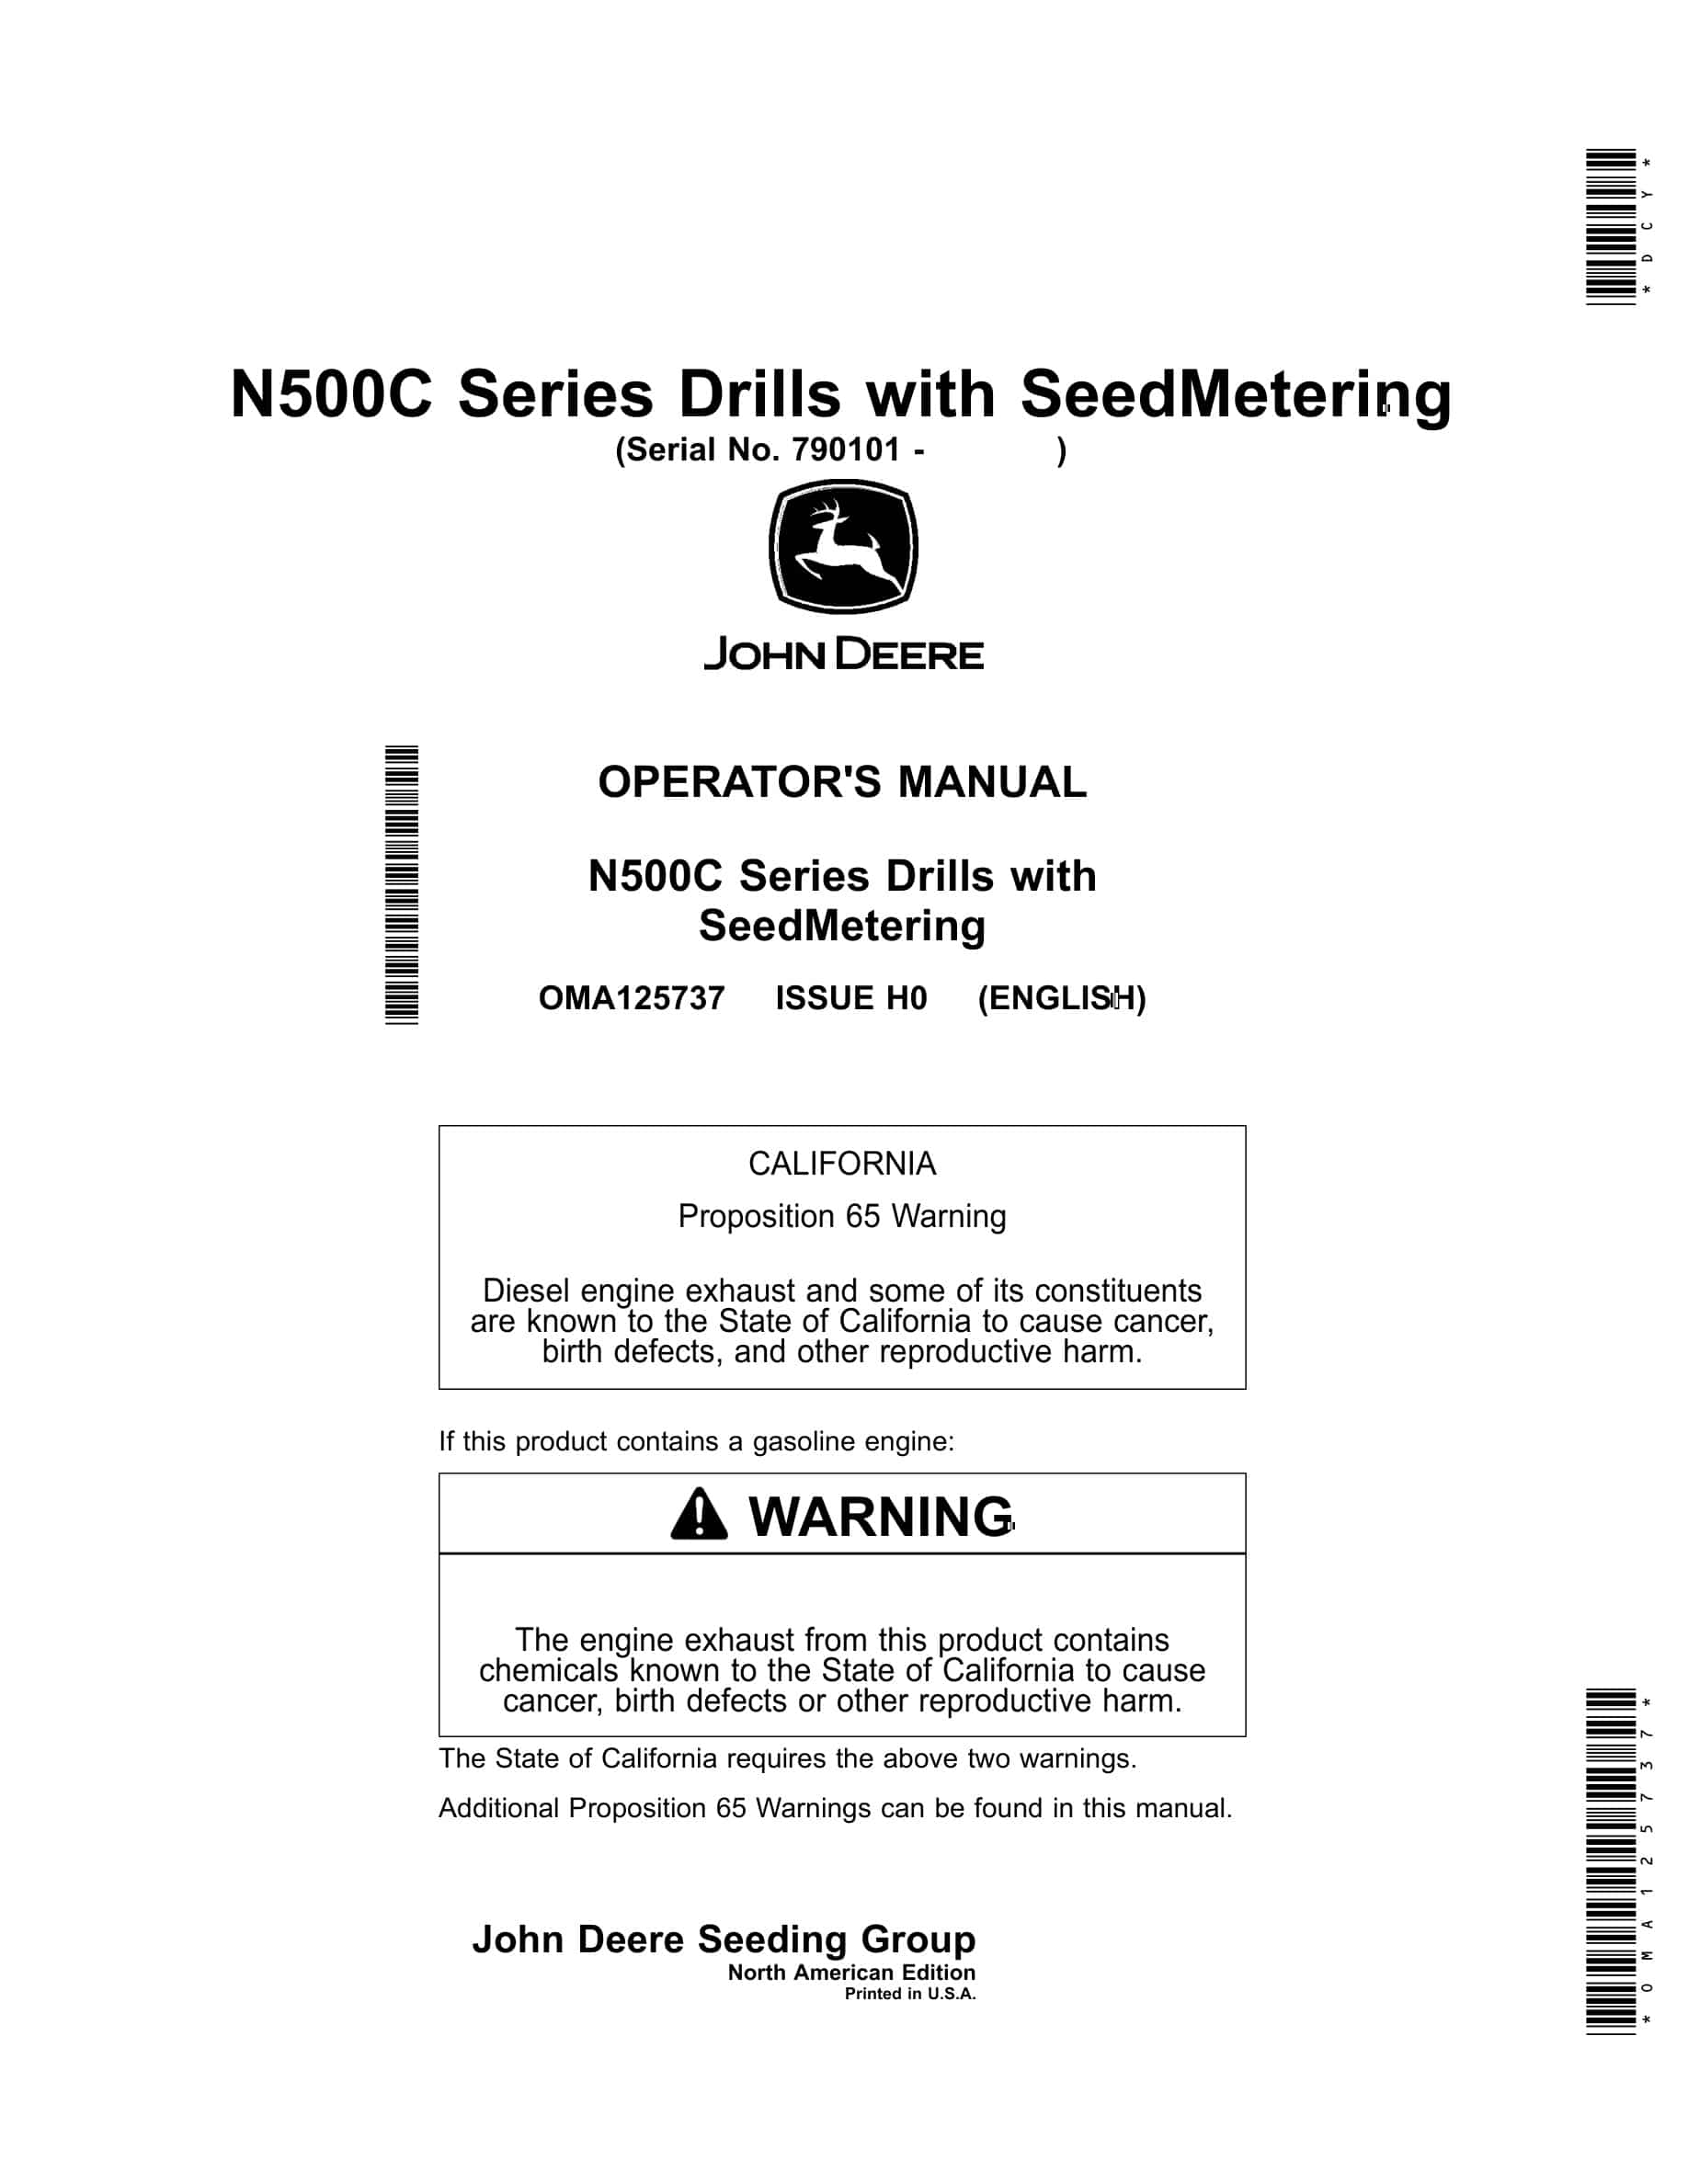 John Deere N500C Series Drill with SeedMetering Operator Manual OMA125737-1